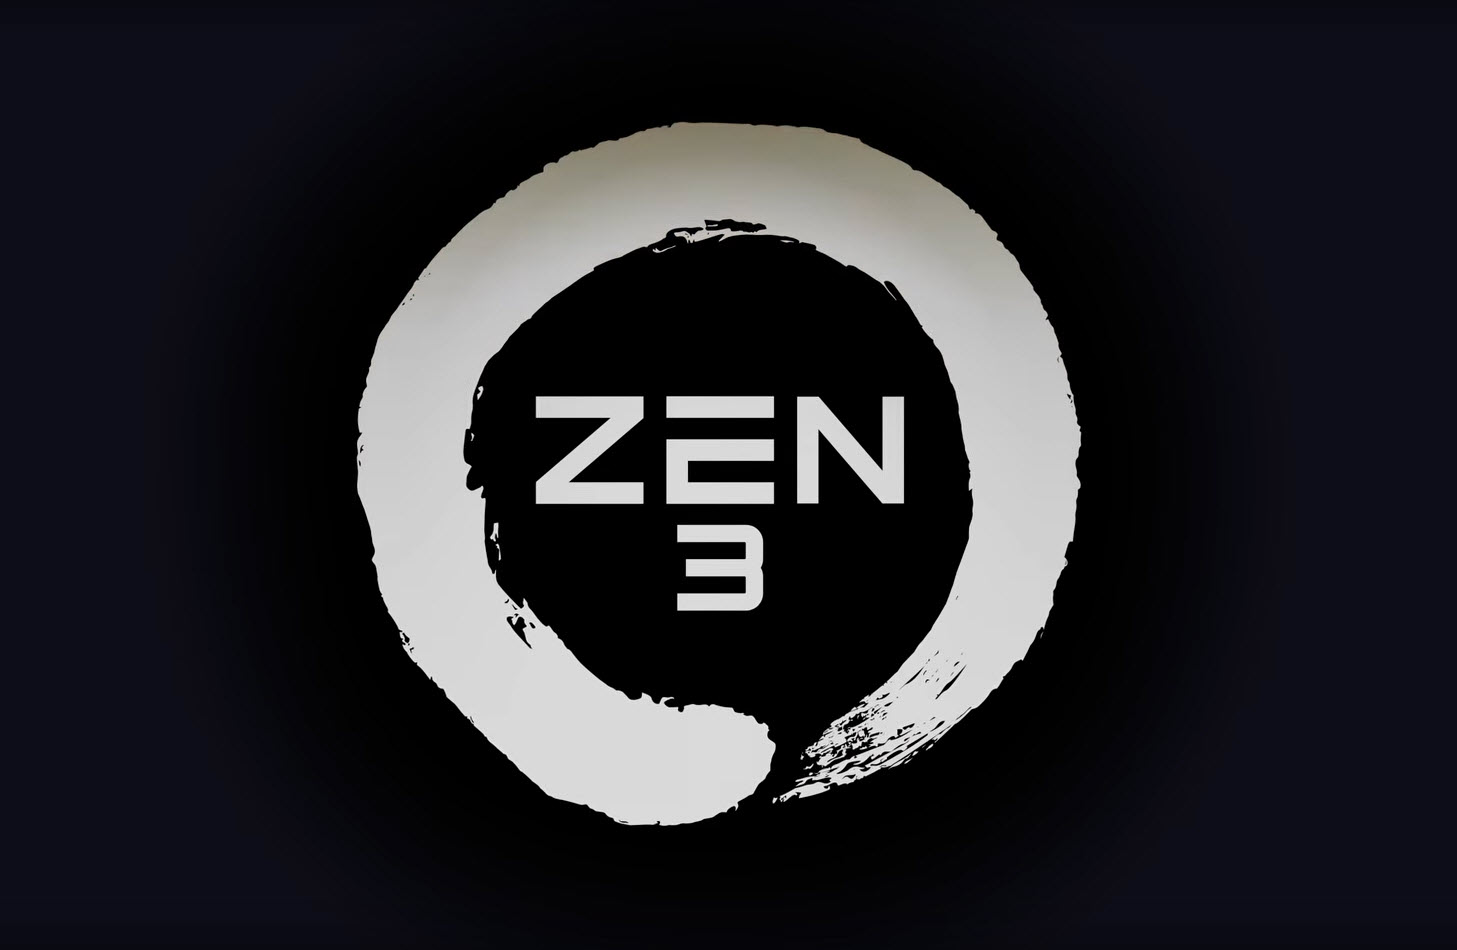 2020 07 08 14 23 43 ถึงเวลาเปลี่ยน!! ผู้บริหาร AMD ดร.ลิซ่า ซู เผยซีพียูสถาปัตย์ ZEN 3 รุ่นใหม่ล่าสุดพร้อมจะเปิดตัวในปลายปีนี้ 